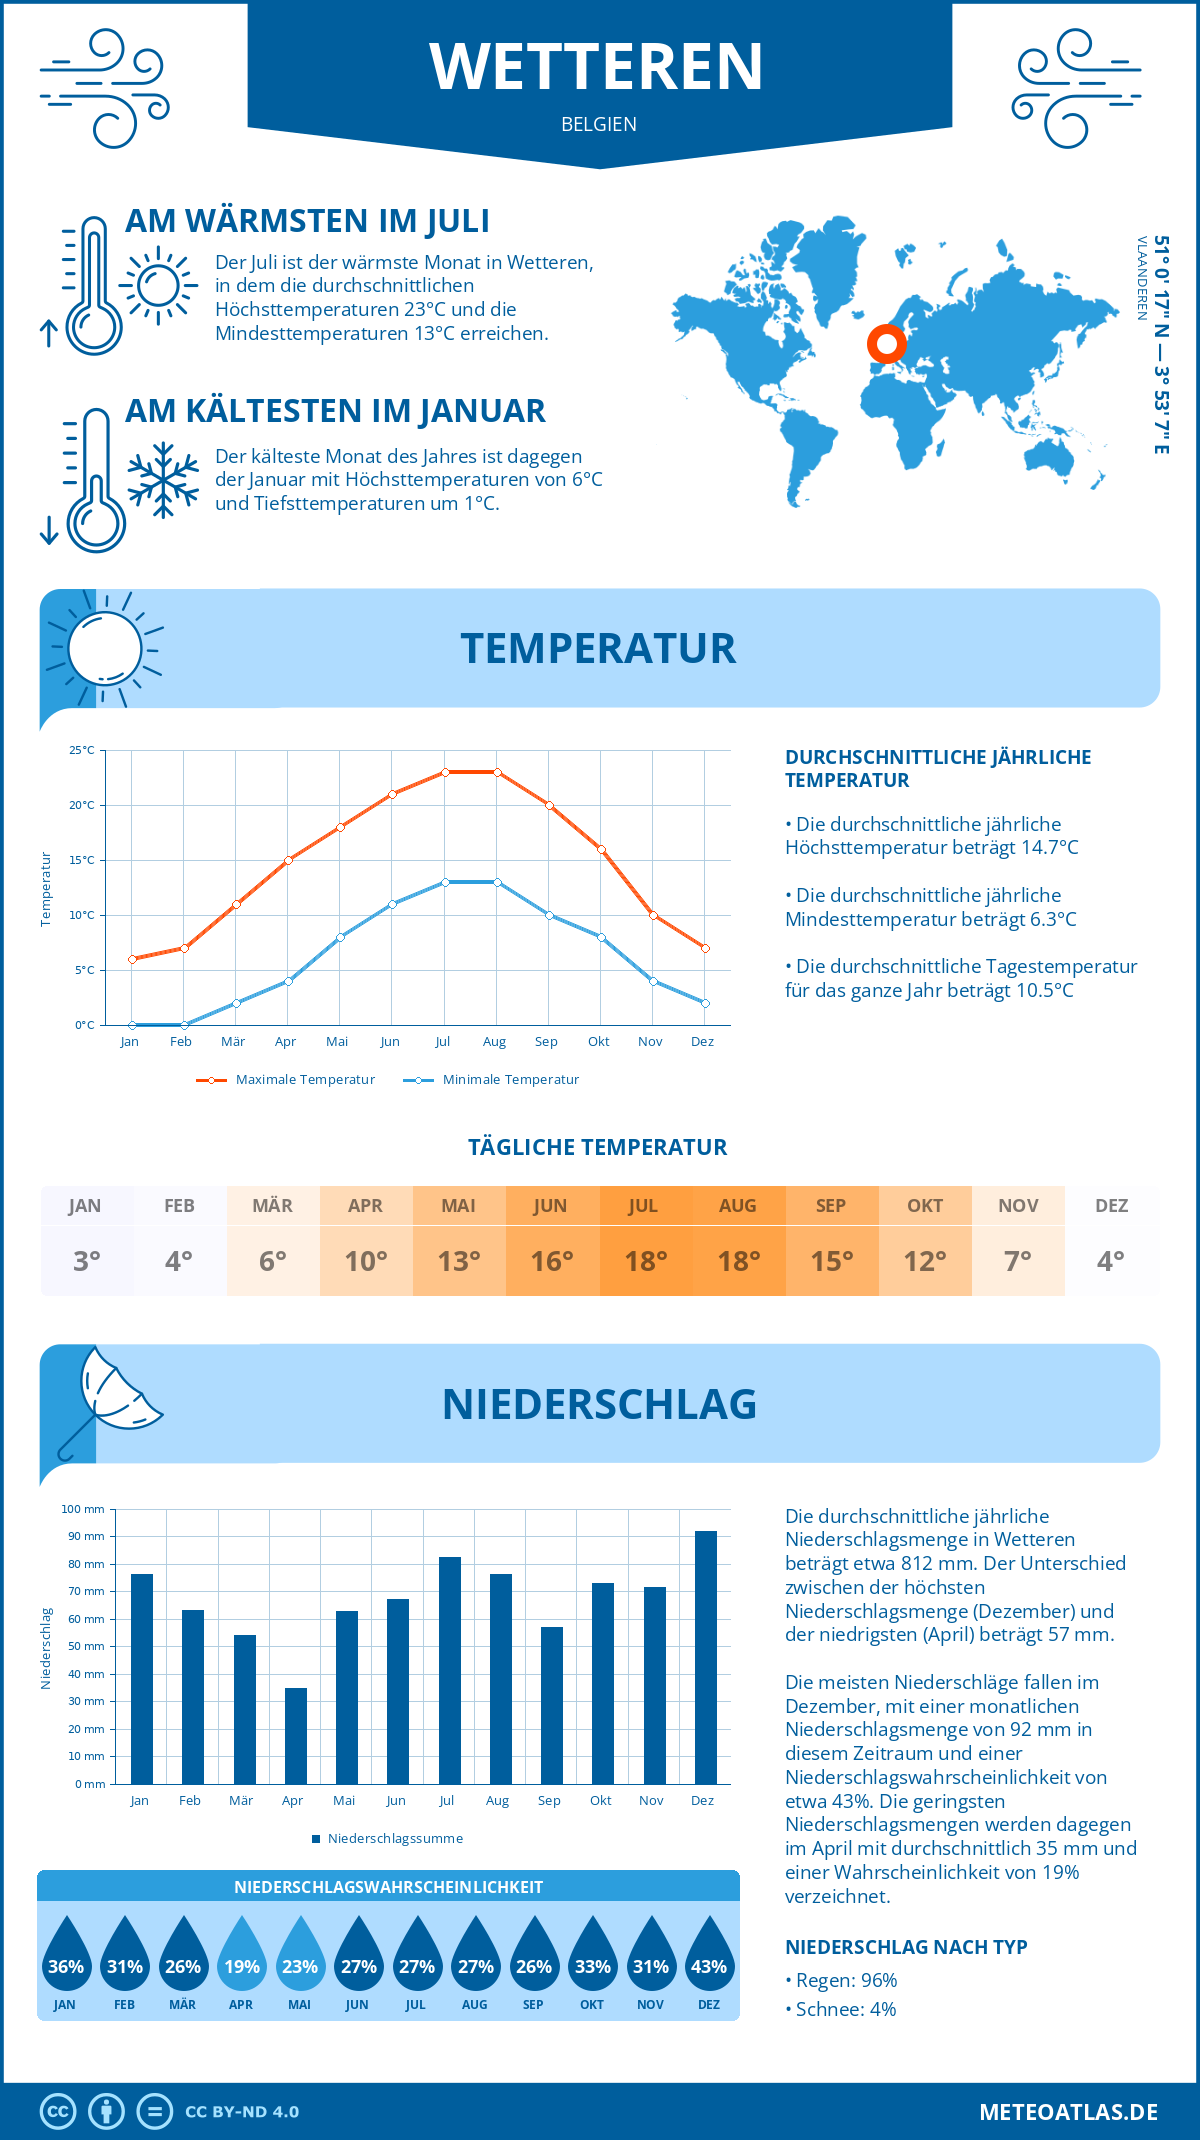 Wetter Wetteren (Belgien) - Temperatur und Niederschlag